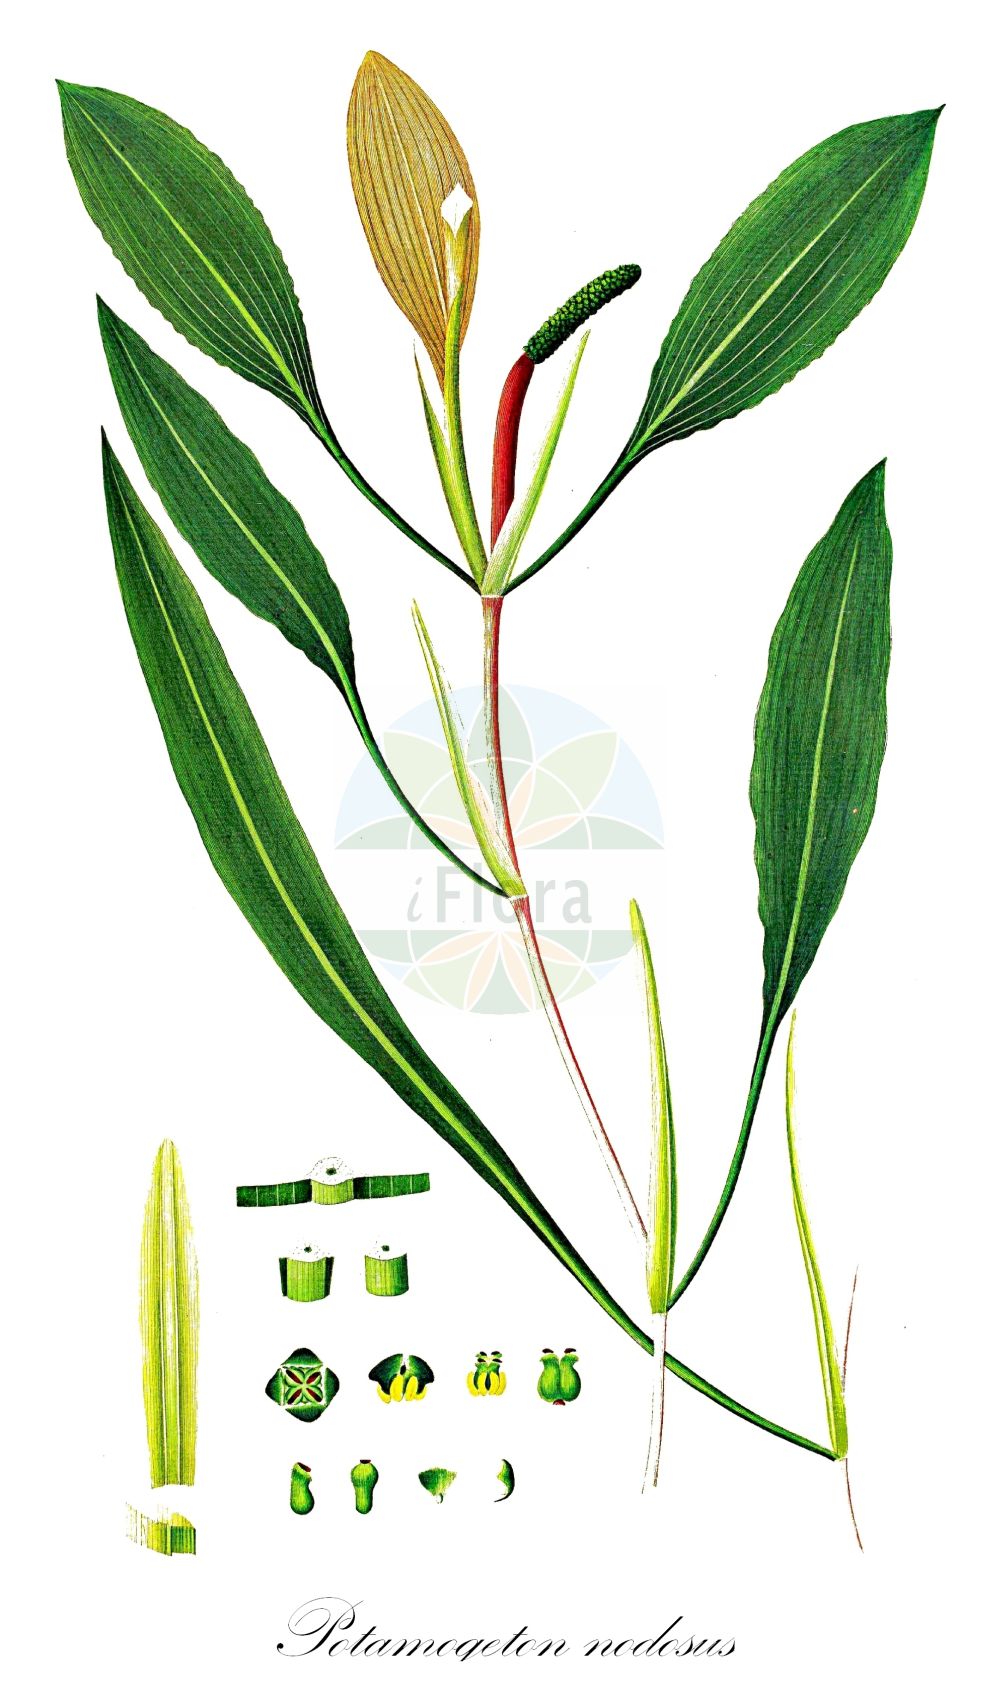 Historische Abbildung von Potamogeton nodosus (Flutendes Laichkraut - Loddon Pondweed). Das Bild zeigt Blatt, Bluete, Frucht und Same. ---- Historical Drawing of Potamogeton nodosus (Flutendes Laichkraut - Loddon Pondweed). The image is showing leaf, flower, fruit and seed.(Potamogeton nodosus,Flutendes Laichkraut,Loddon Pondweed,Potamogeton canariensis,Potamogeton leschenaultii,Potamogeton nodosus,Flutendes Laichkraut,Knoten-Laichkraut,Loddon Pondweed,Longleaf Pondweed,American Pondweed,Potamogeton,Laichkraut,Pondweed,Potamogetonaceae,Laichkrautgewächse,Pondweed family,Blatt,Bluete,Frucht,Same,leaf,flower,fruit,seed,Oeder (1761-1883))